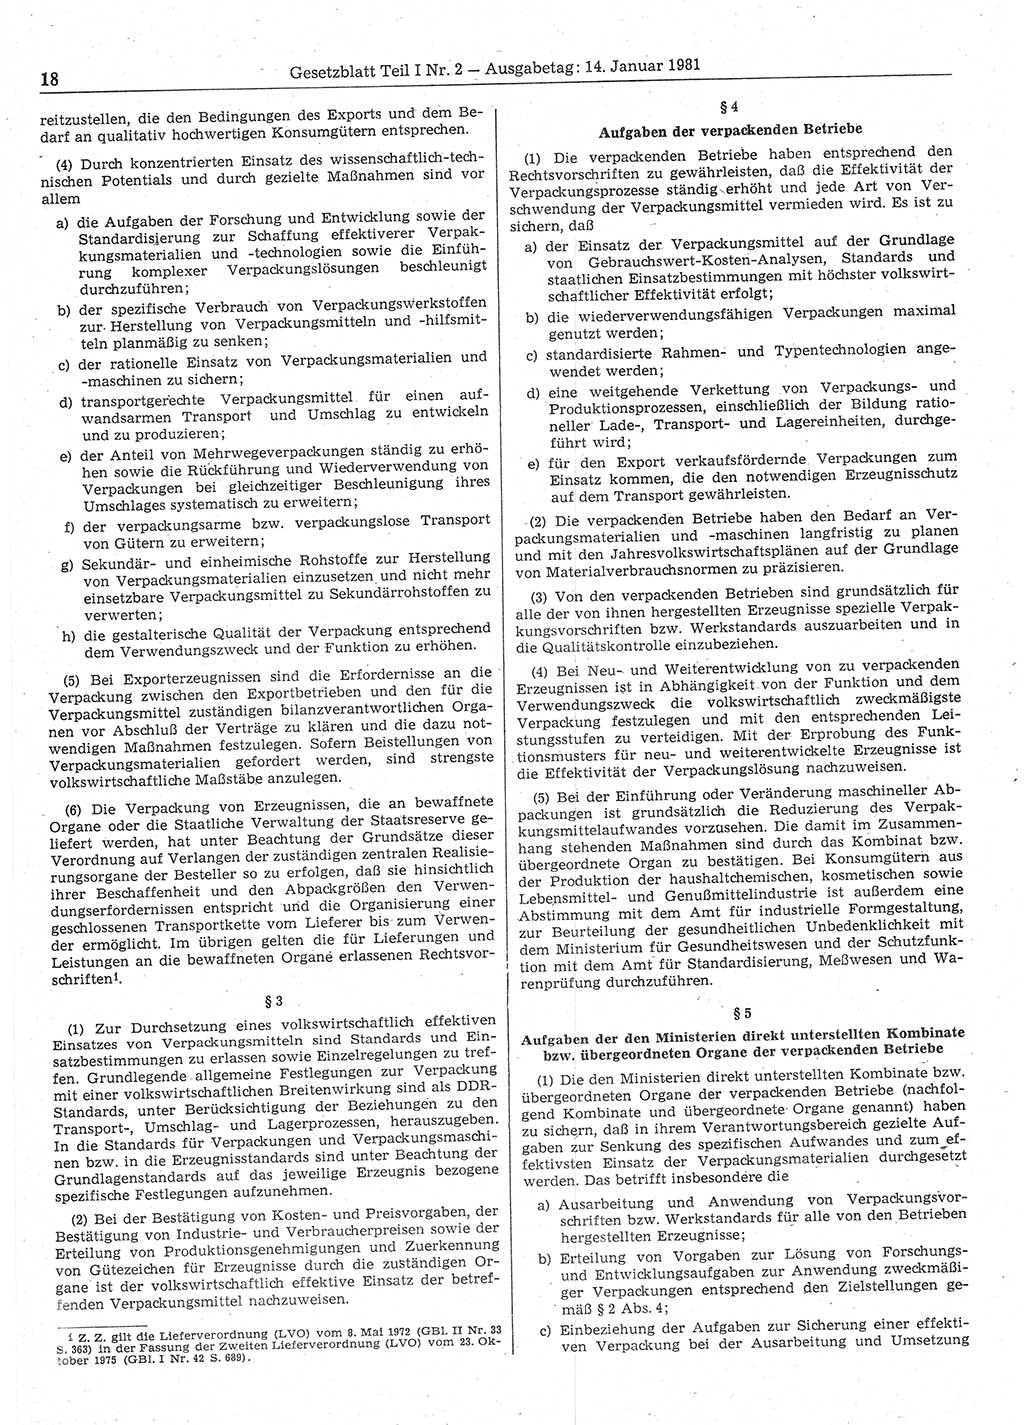 Gesetzblatt (GBl.) der Deutschen Demokratischen Republik (DDR) Teil Ⅰ 1981, Seite 18 (GBl. DDR Ⅰ 1981, S. 18)